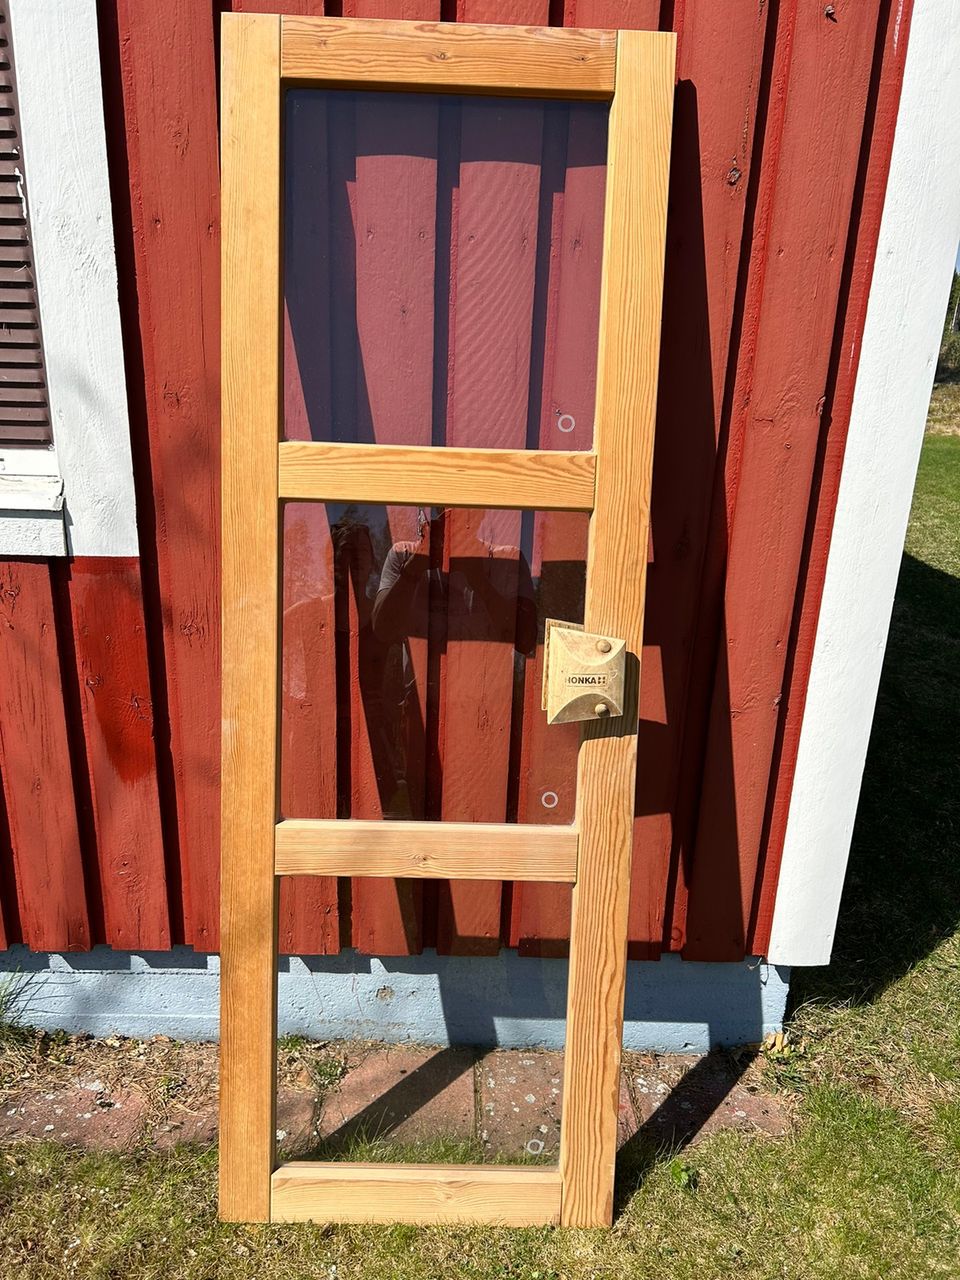 Myydään kaksi saunan ovea yhteishintaan 70€